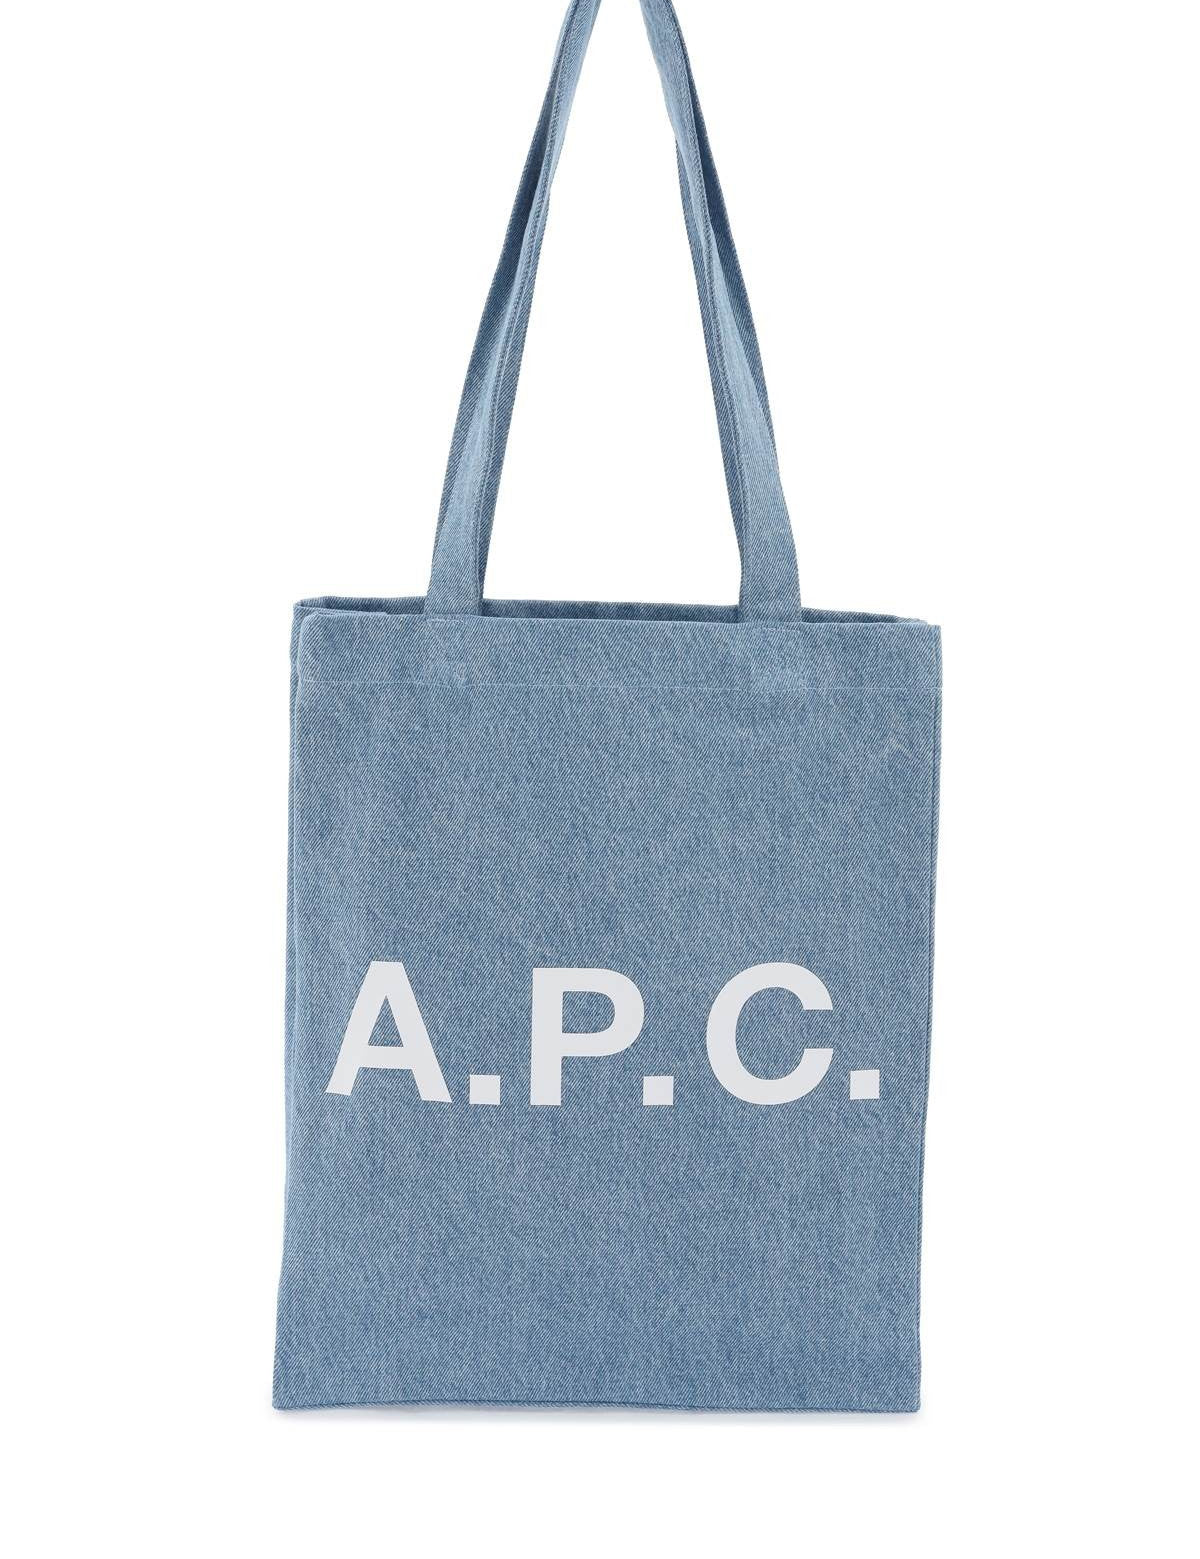 apc-denim-lou-tote-bag-with.jpg